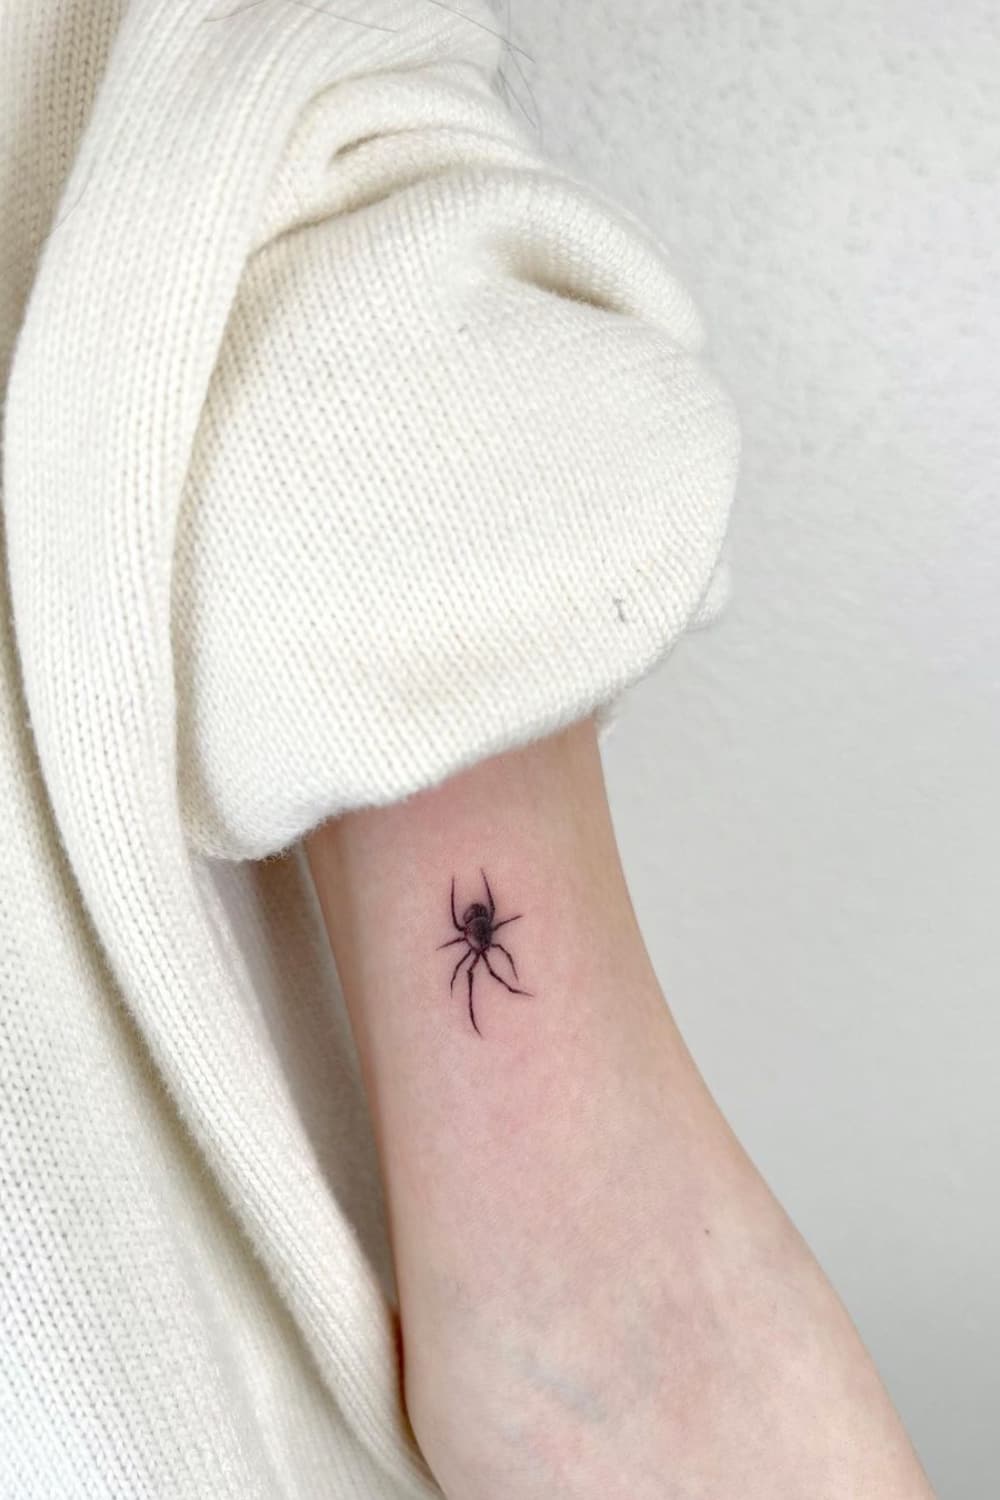 Small Spider Tattoo